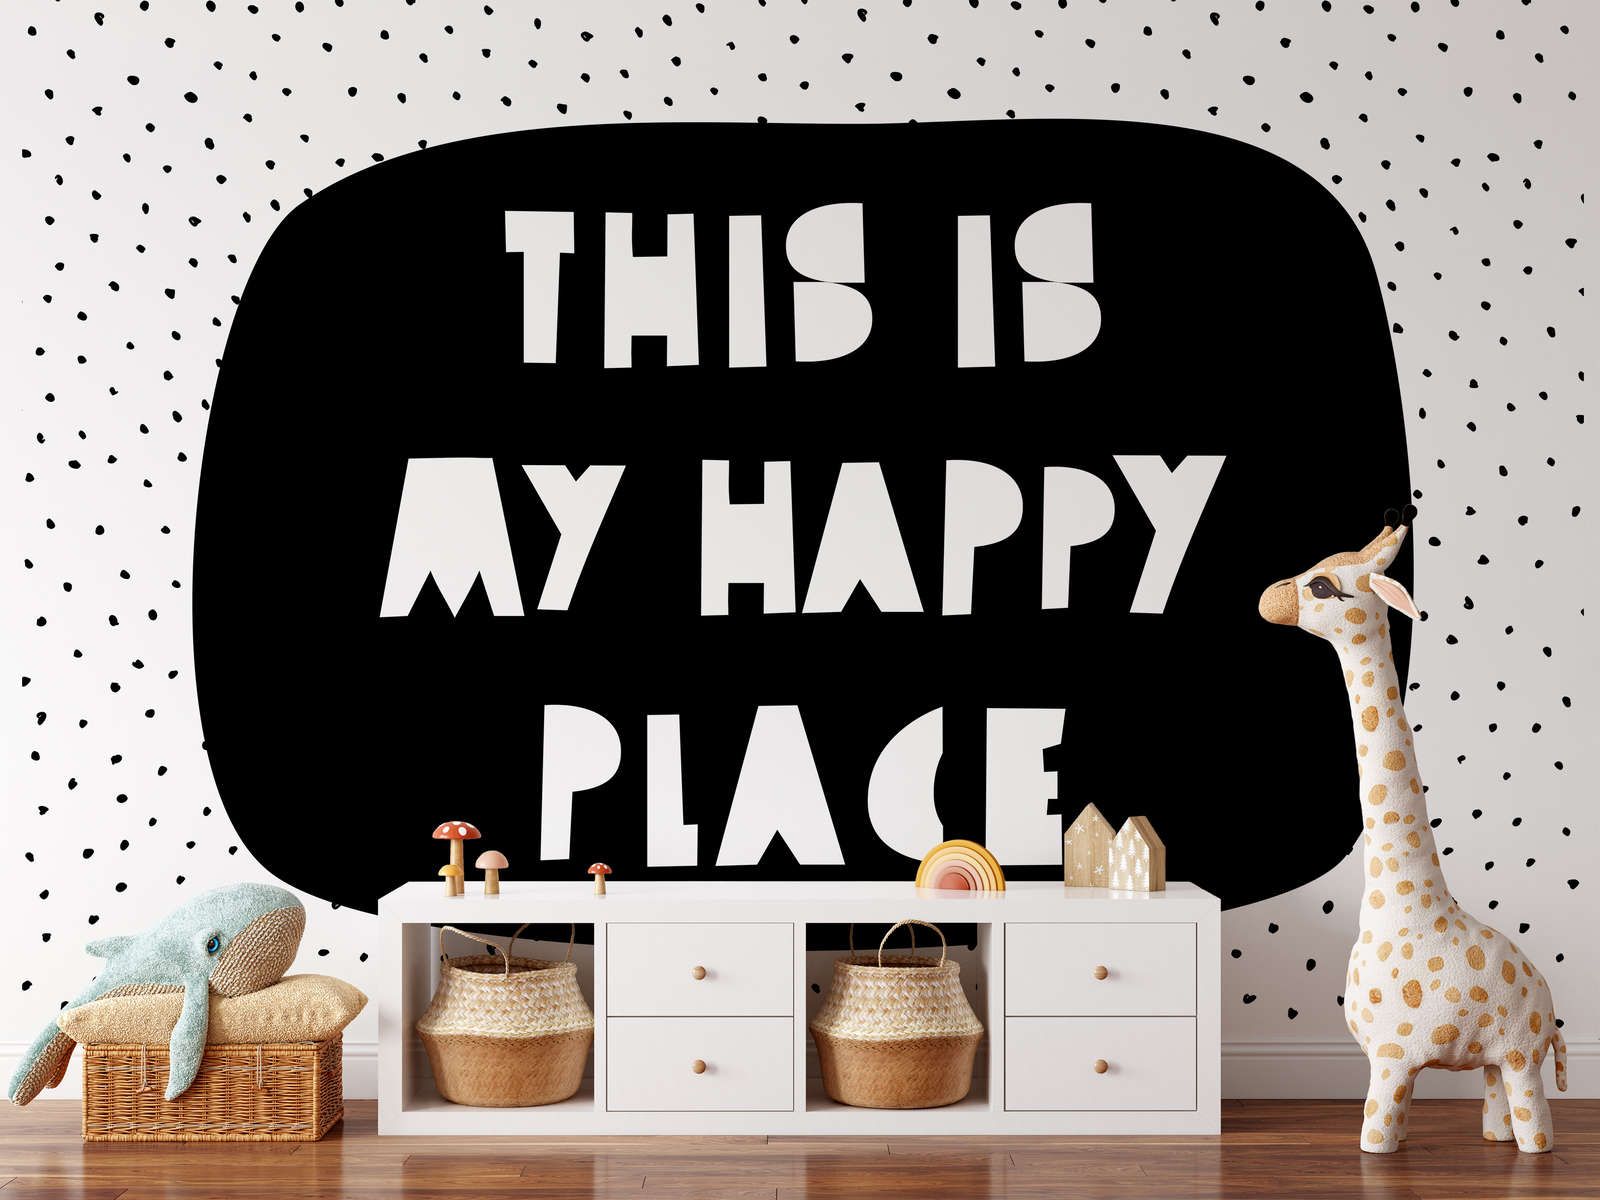             papiers peints à impression numérique pour chambre d'enfant avec inscription "This is my happy place" - intissé lisse & mat
        